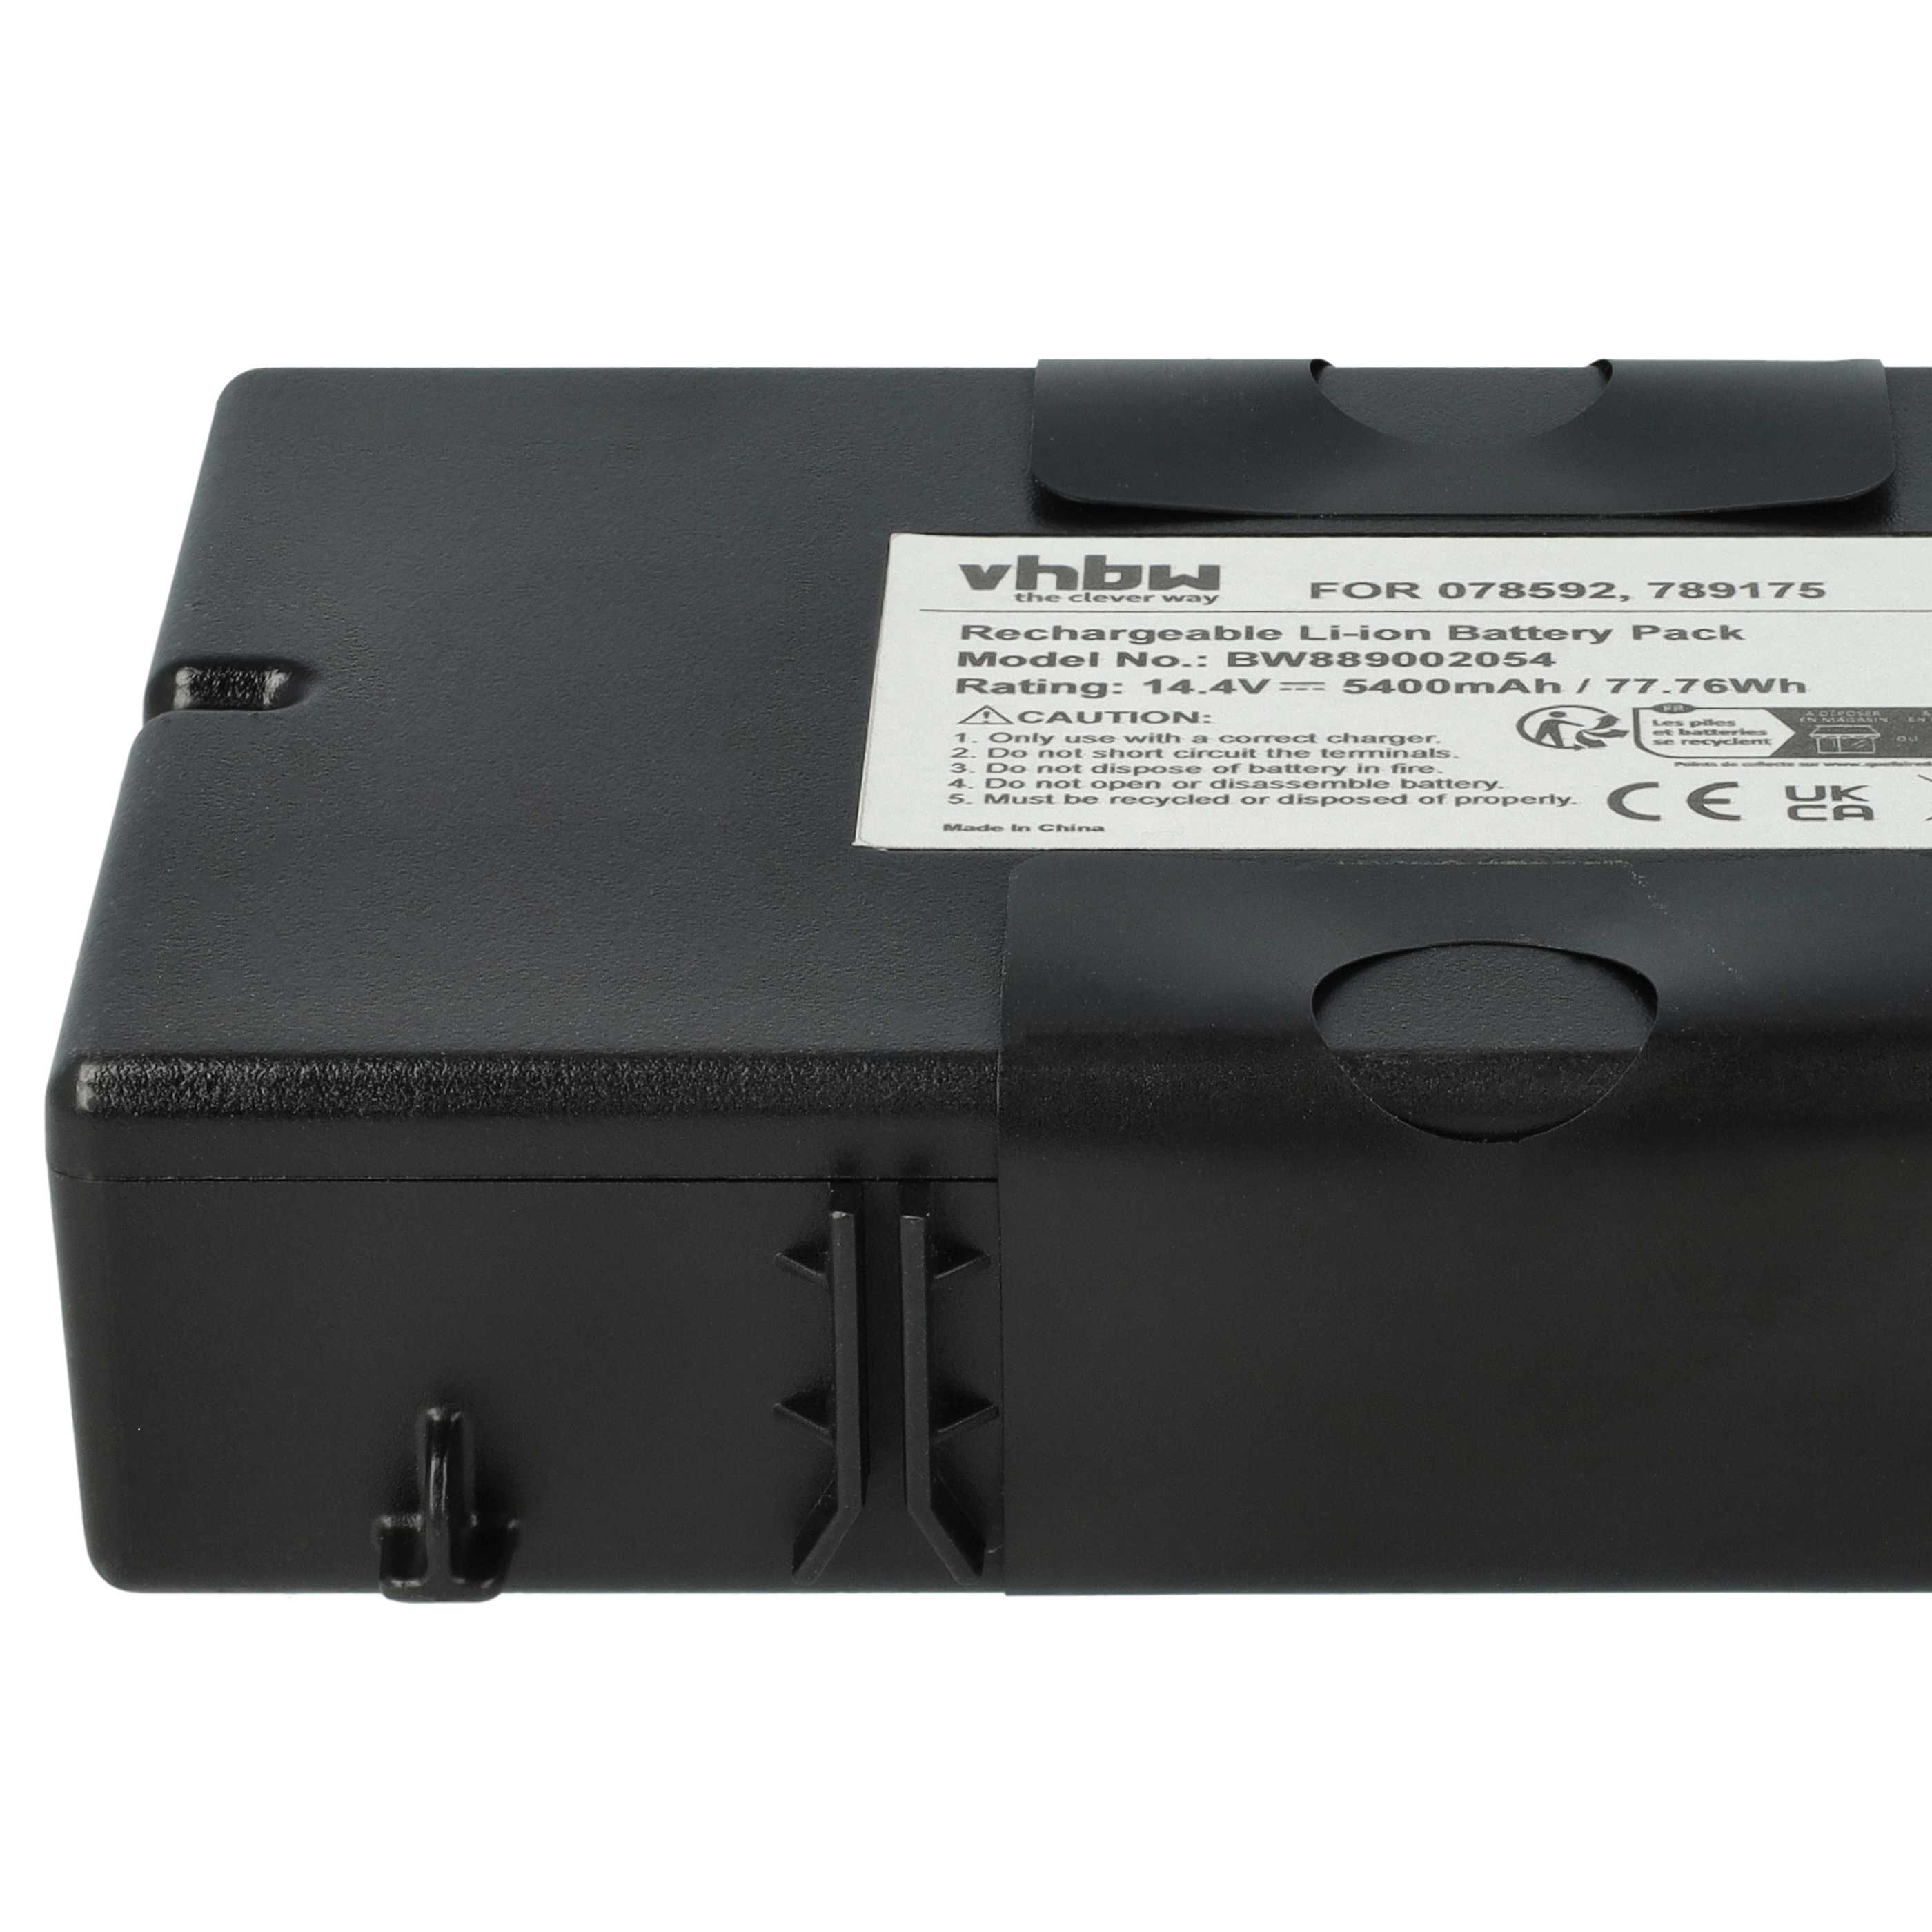 Batteria sostituisce Bose 789175, 7891750010, 078592 per altoparlanti Bose - 5400mAh 14,4V Li-Ion